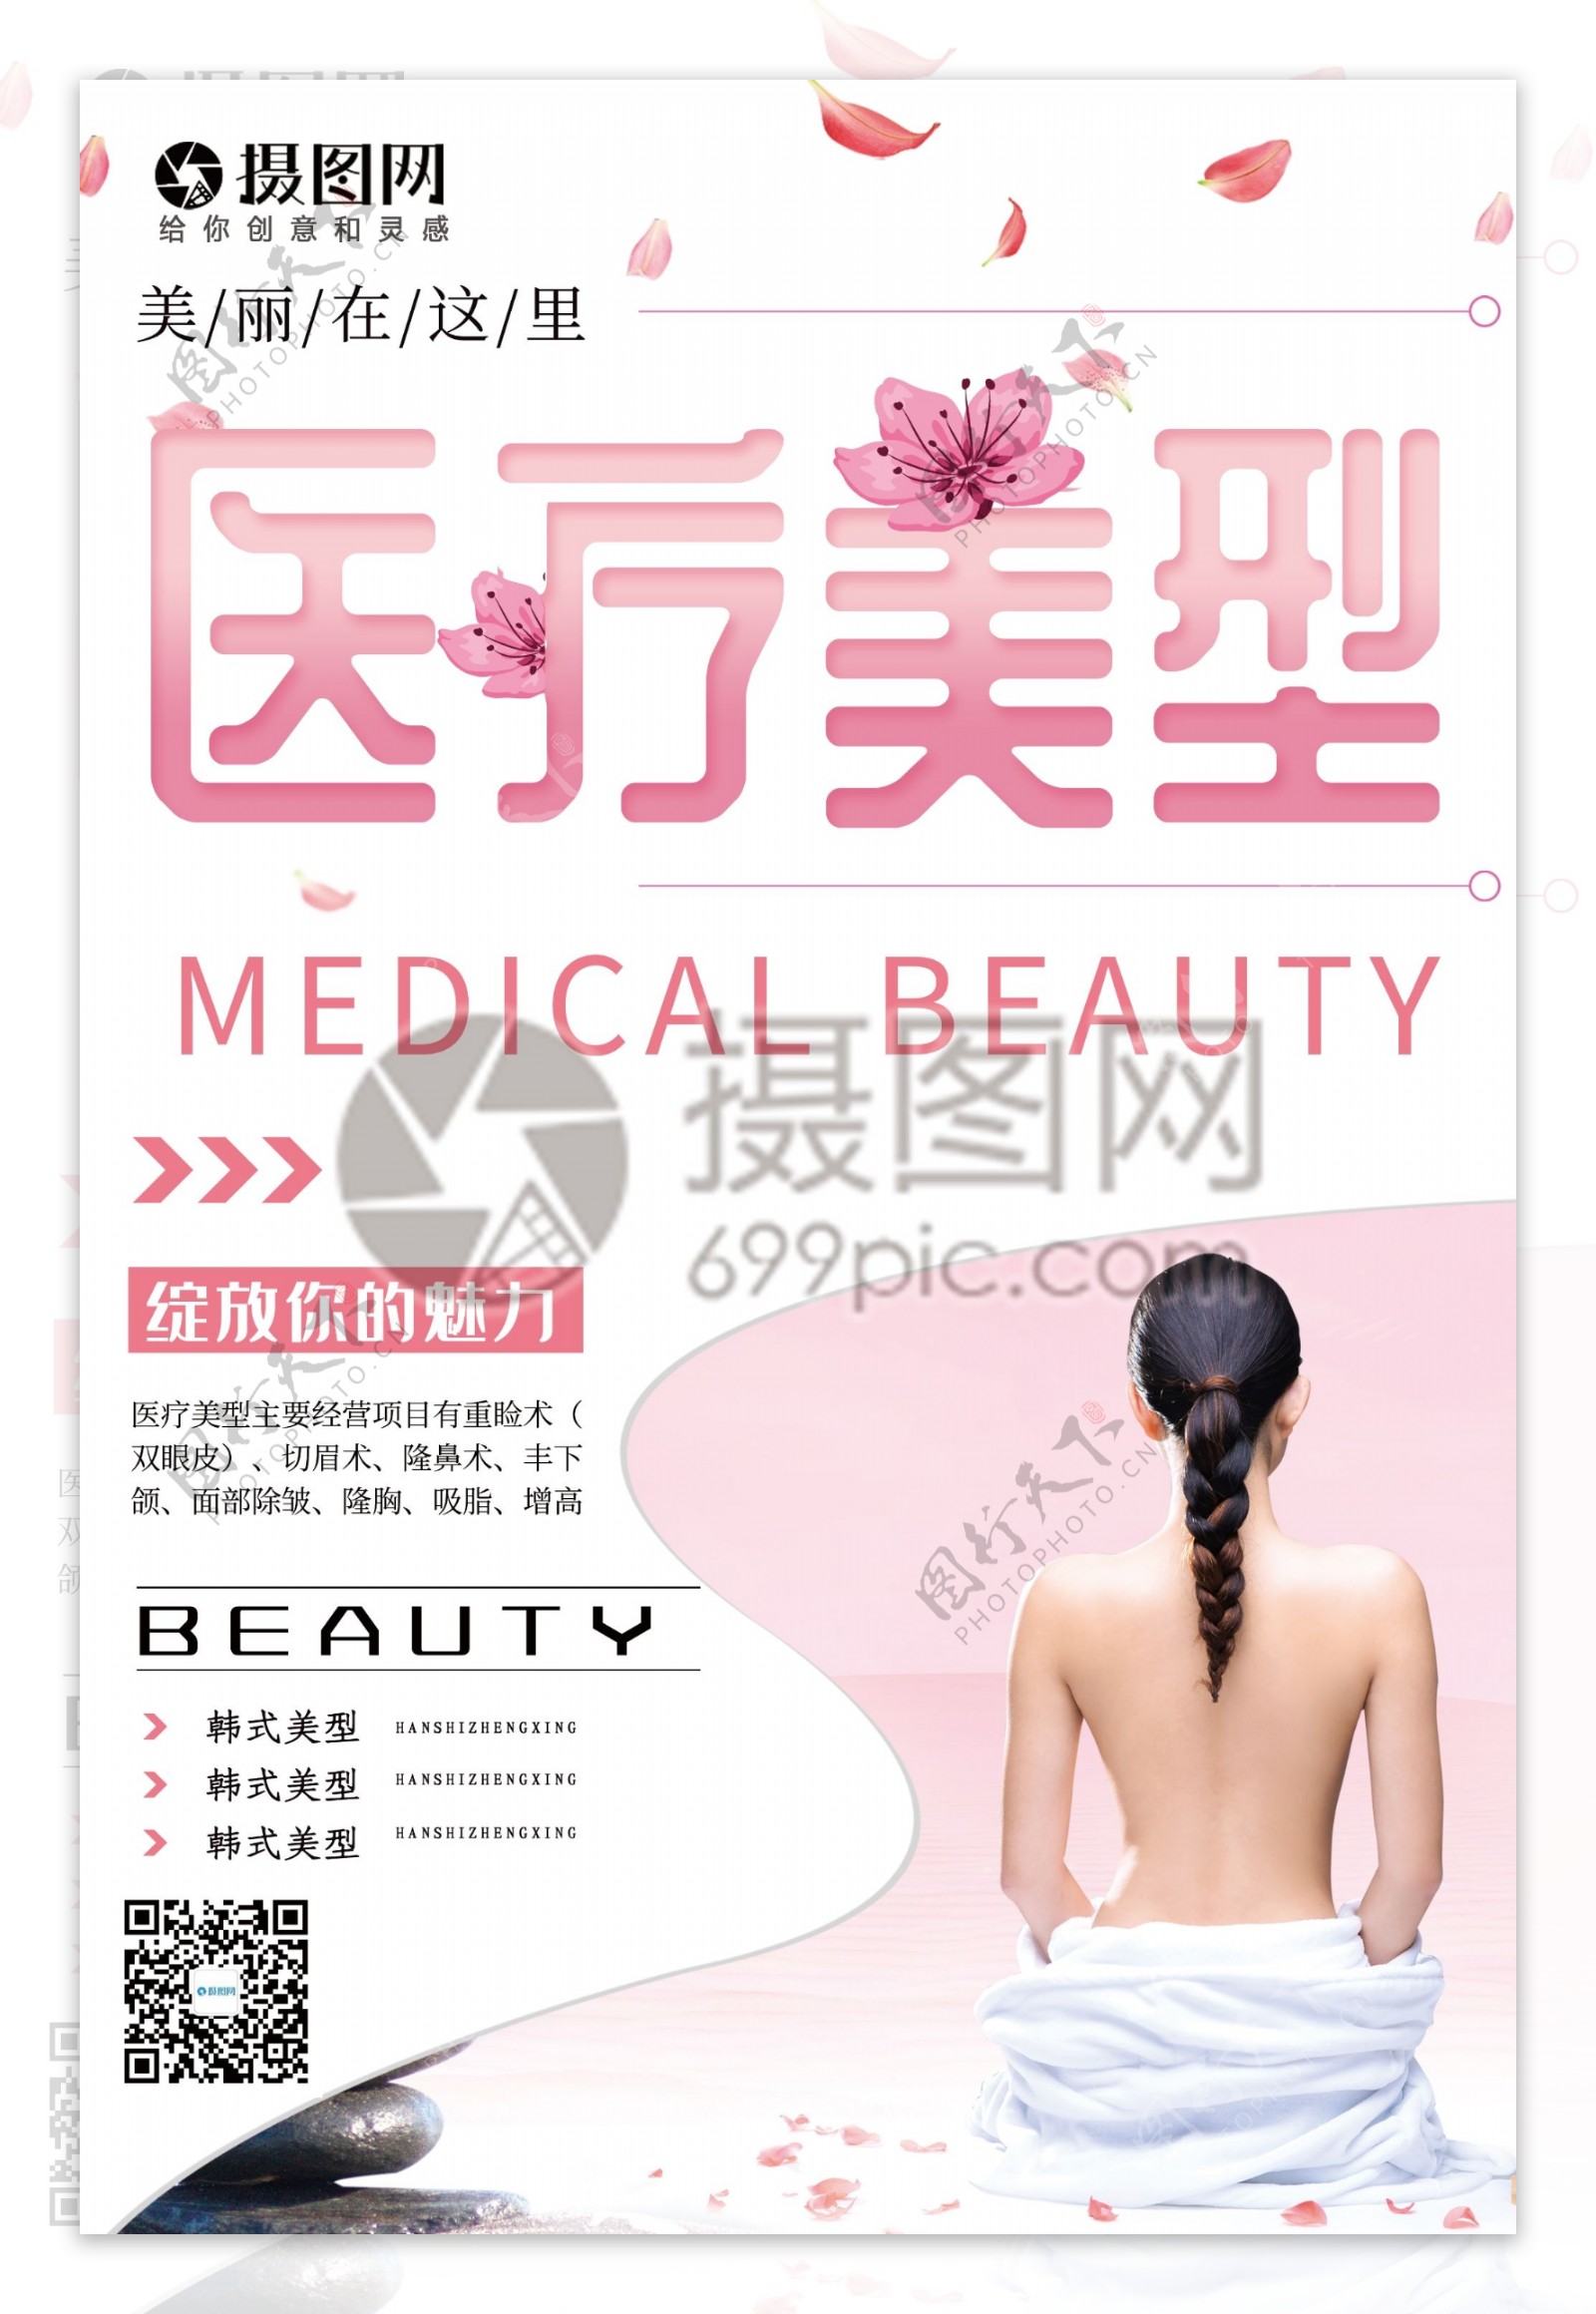 粉色唯美花瓣美女医疗美型宣传海报